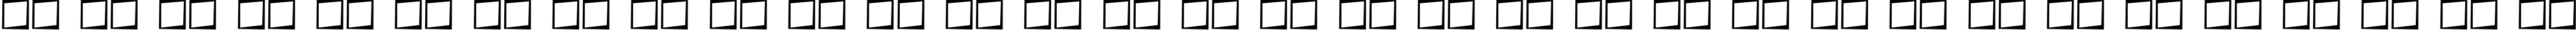 Пример написания русского алфавита шрифтом Asshole Basic Sans Serif Font